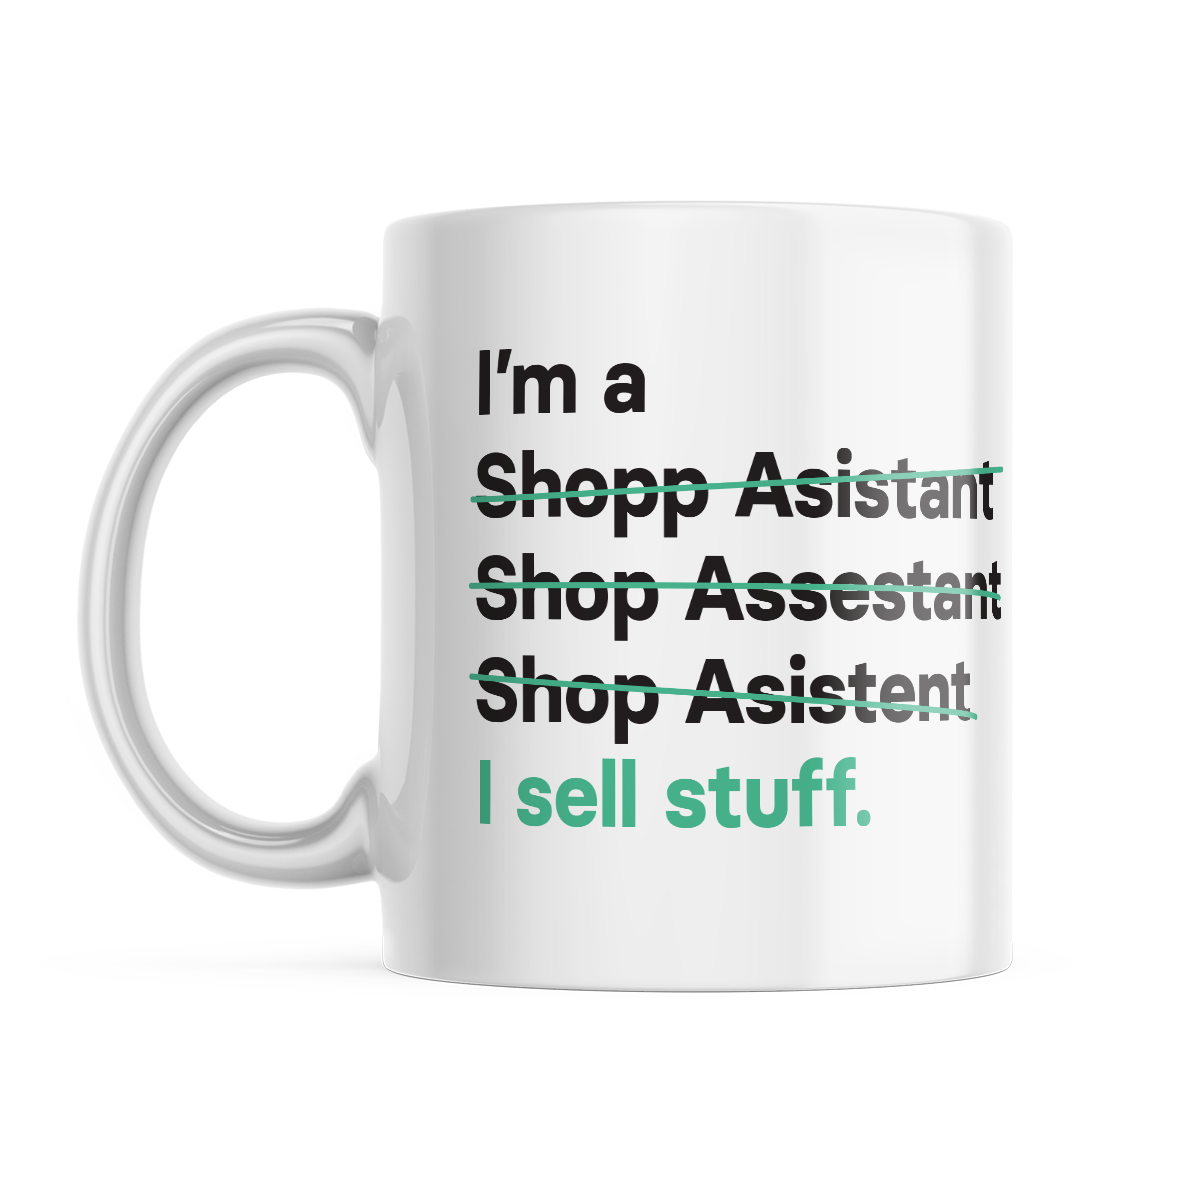 I'm a Shop Assistant